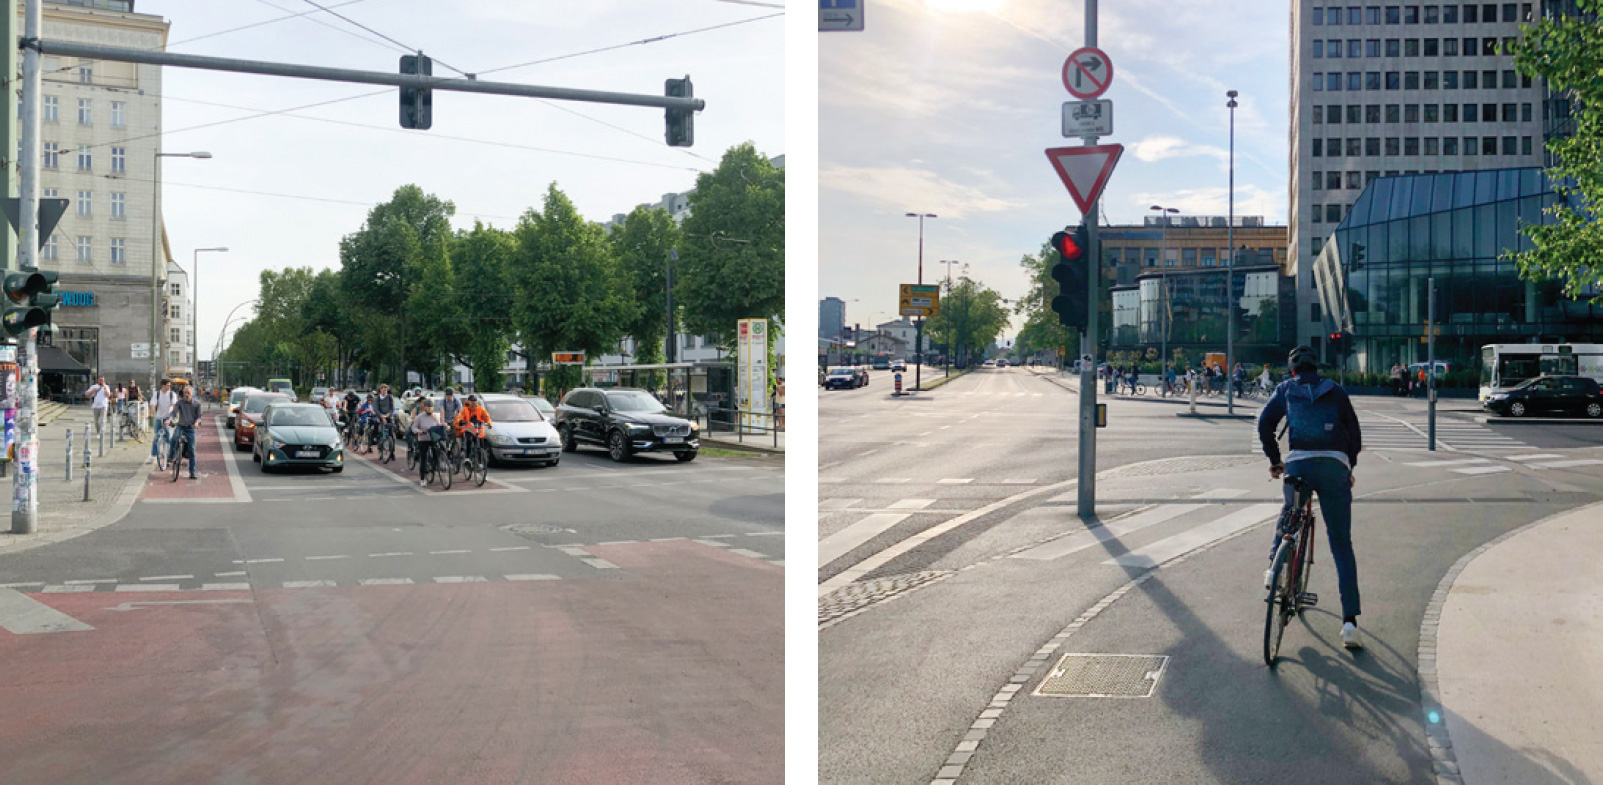 Slika 4: Pri spodbujanju uporabe kolesa v mestu je ključna varna kolesarska infrastruktura, ki omogoča hitro premagovanje razdalj. Kolesarske steze v Berlinu postavljajo kolesarje v vidno polje voznikov osebnih avtomobilov (levo). V Ljubljani so kolesarji čez križišče najpogosteje vodeni preko vijug oz. pentelj, kar povečuje možnost za nastanek nesreč (desno). Avtor fotografij: Kumer, 2022